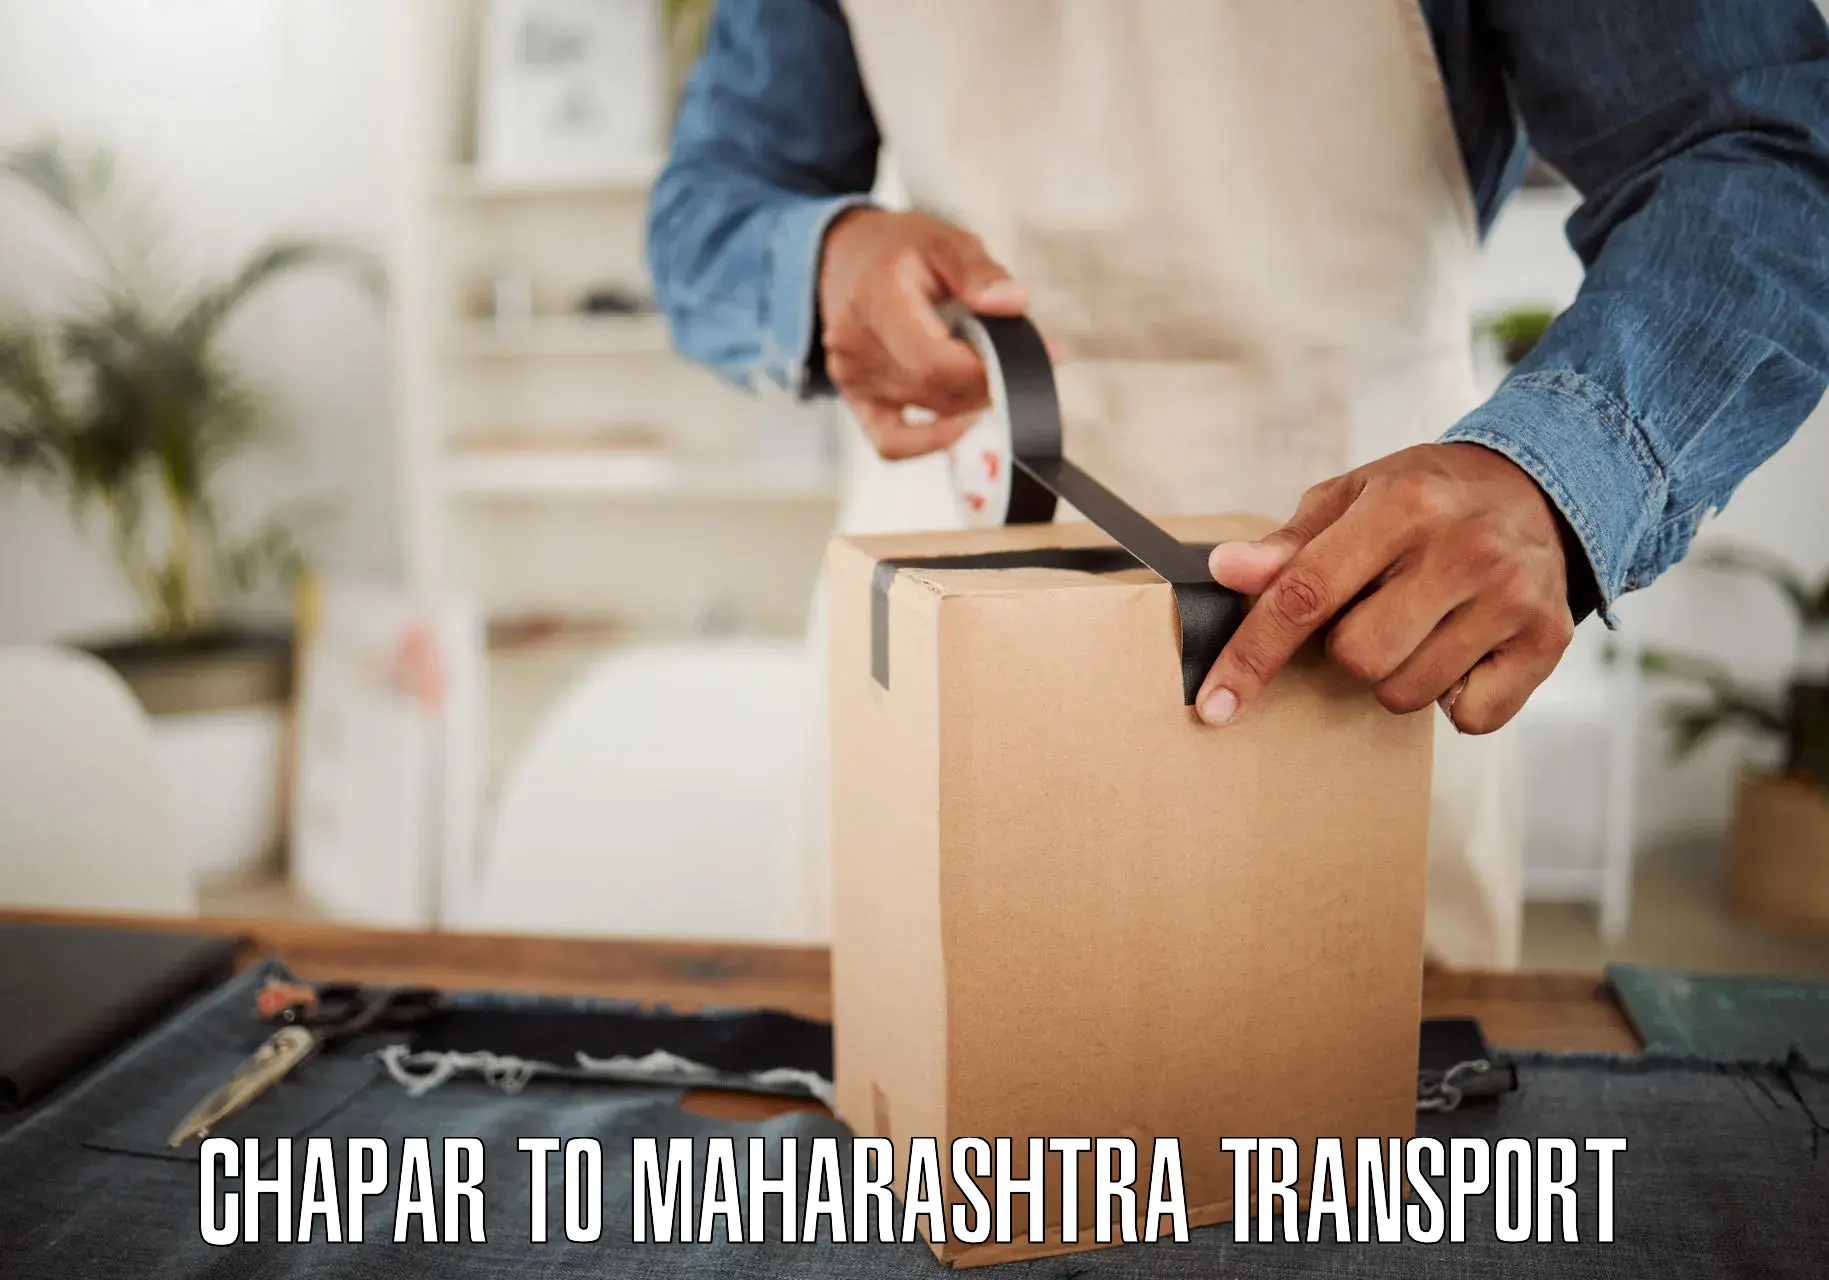 Transportation services Chapar to Maharashtra